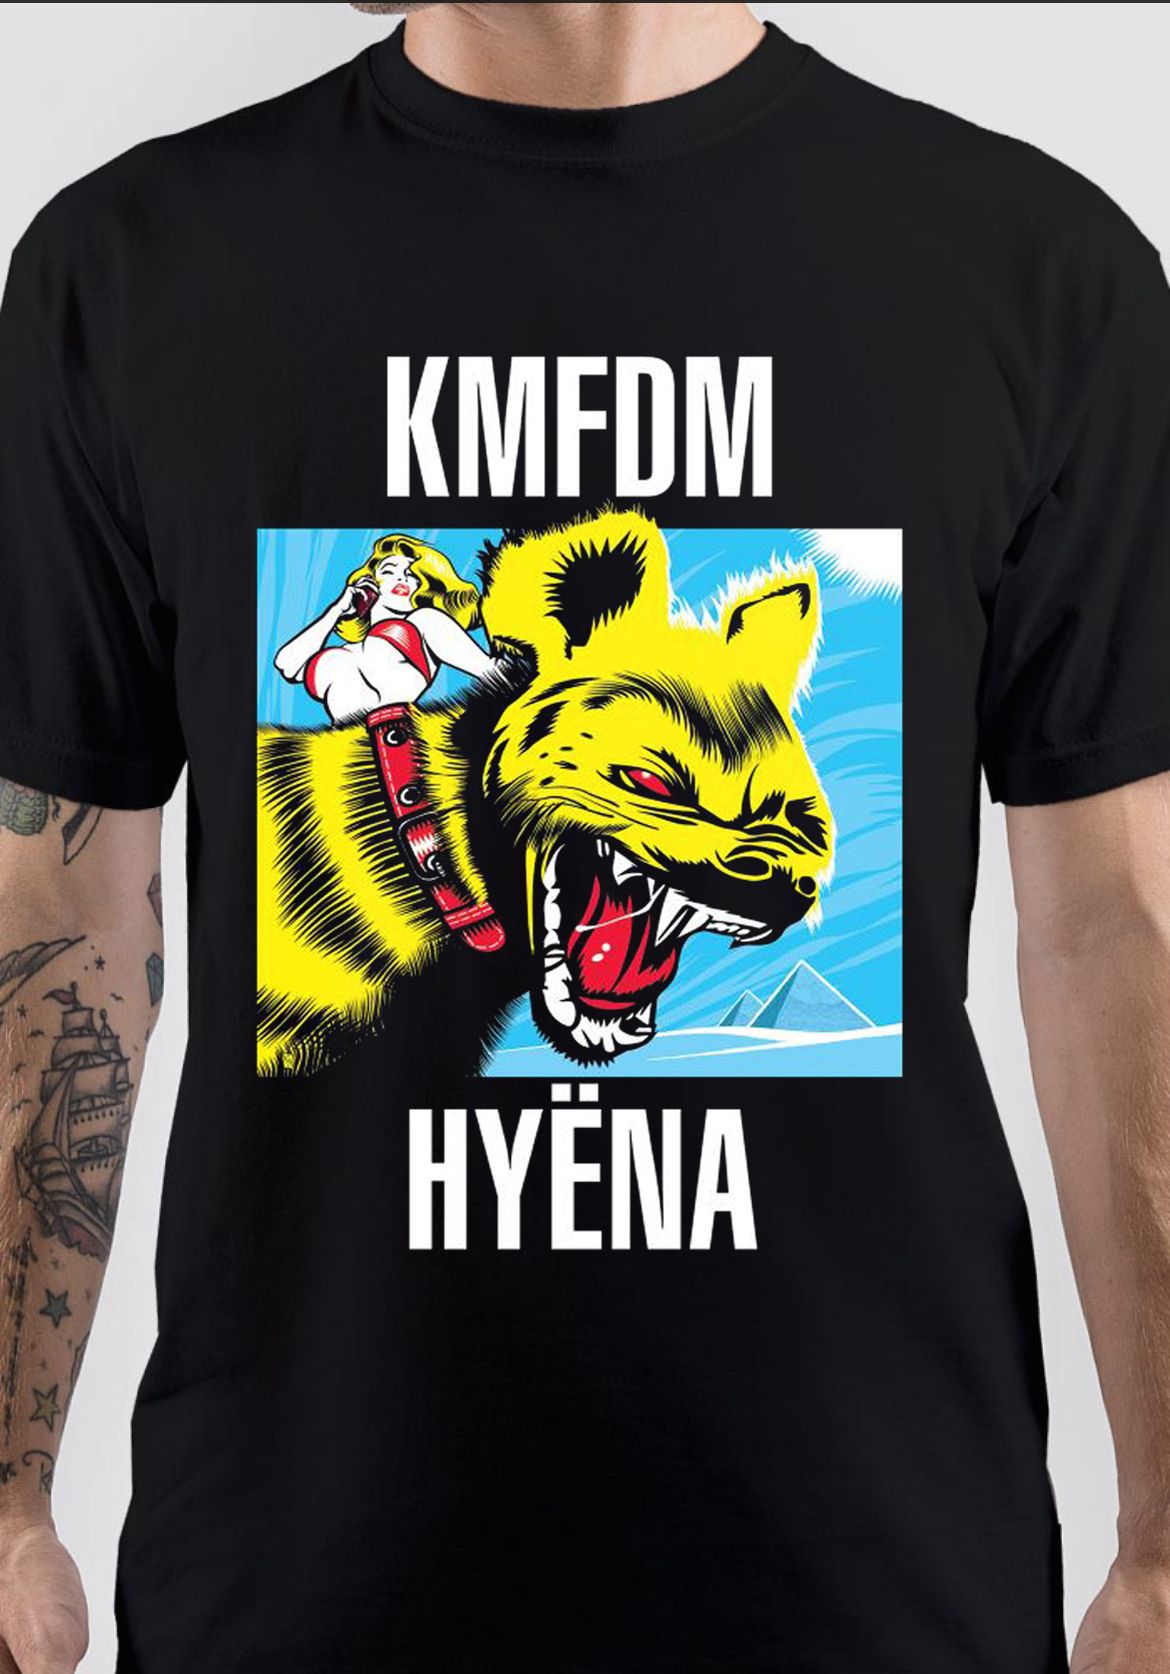 KMFDM T-Shirt And Merchandise